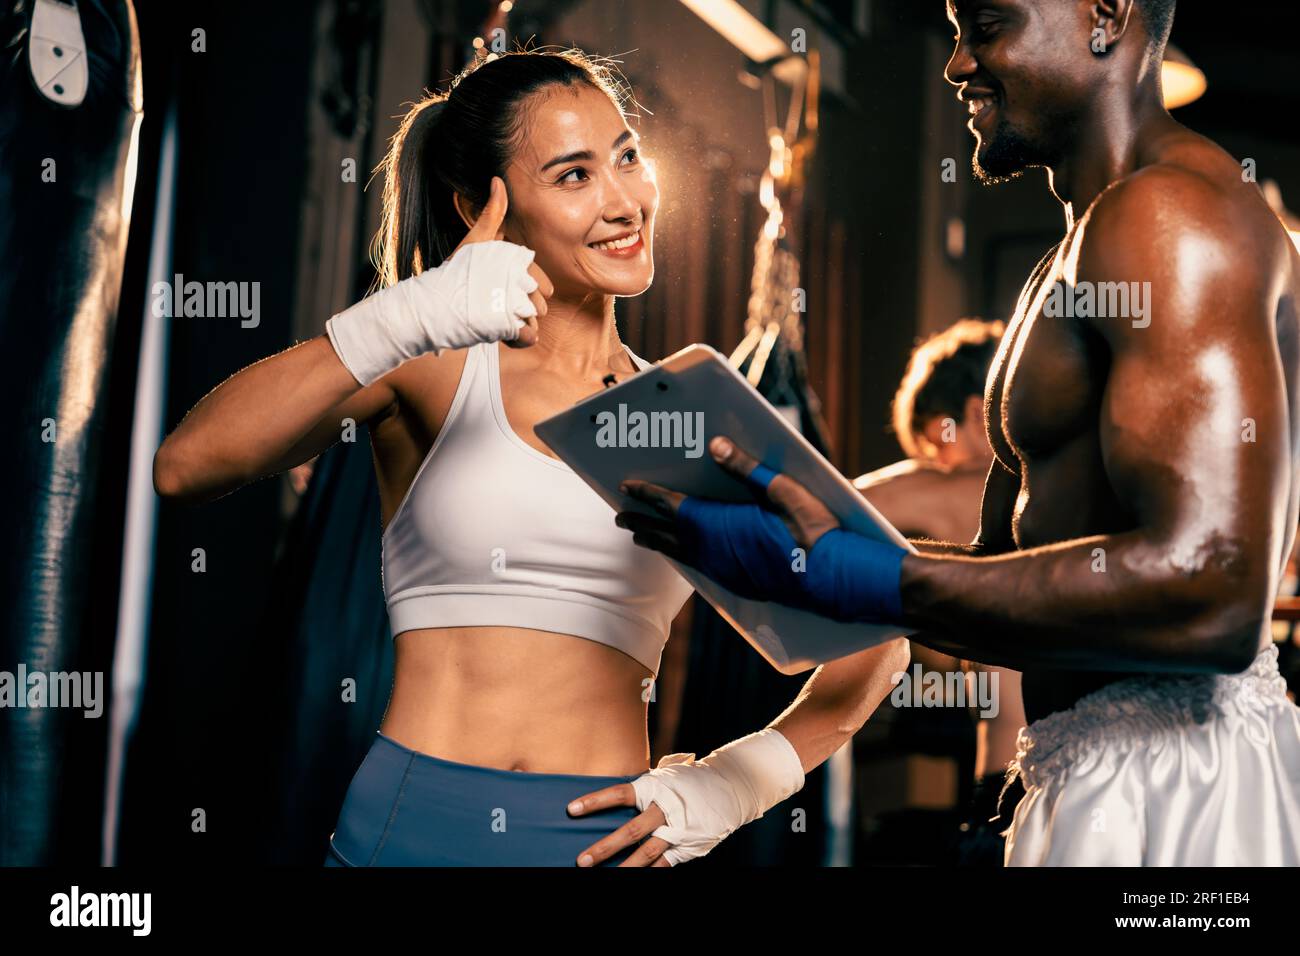 Eine asiatische Muay Thai-Boxerin und ihr persönlicher Boxtrainer diskutieren über ihren körperlichen Fortschritt im Fitnessstudio, der die Bindung an ihre Körpermuskulatur widerspiegelt Stockfoto